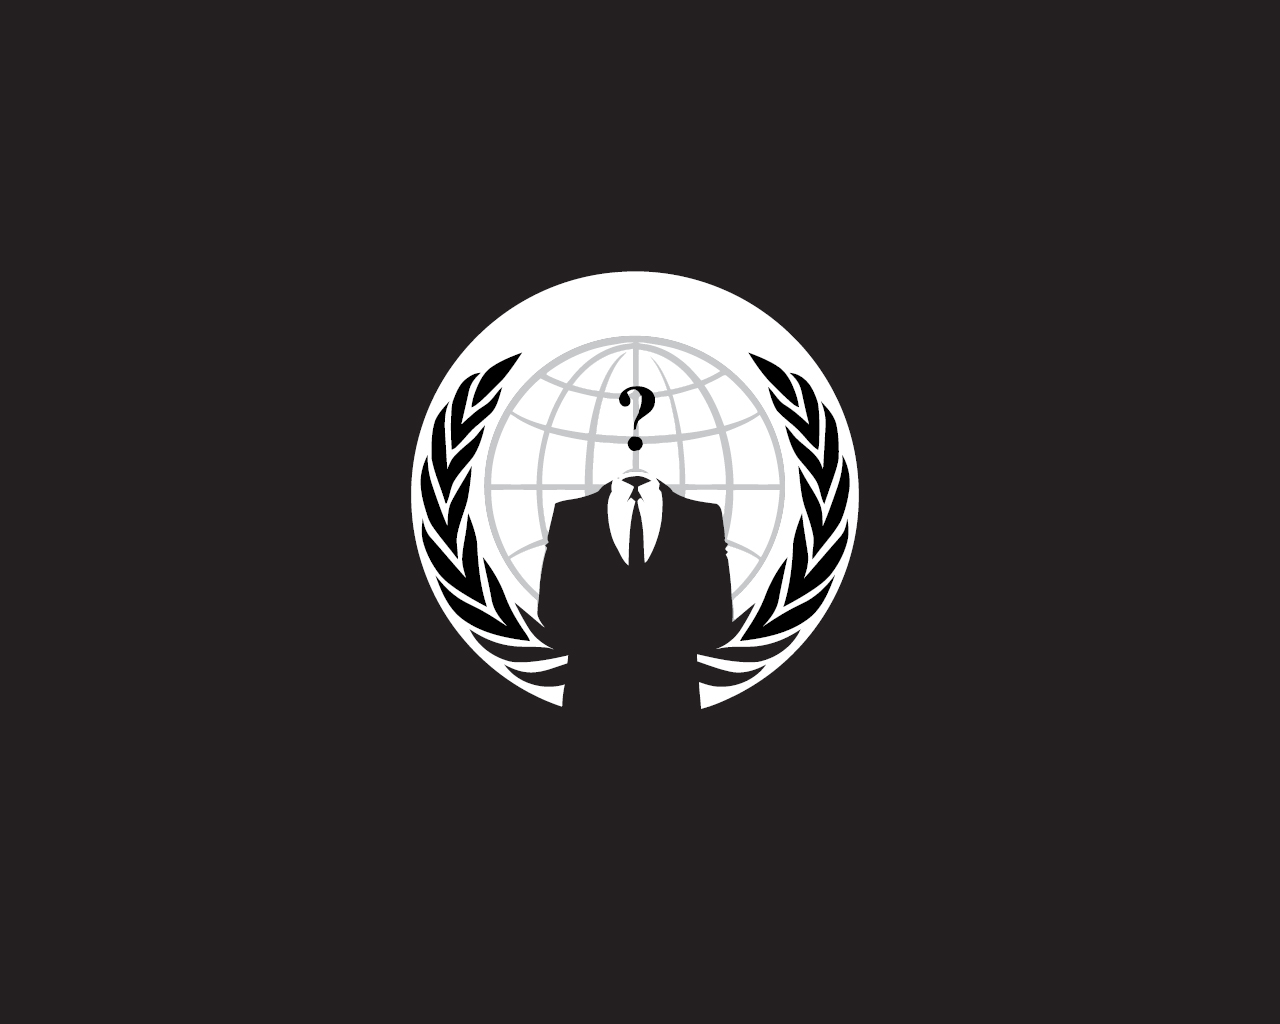 [49+] Anonymous Logo Wallpaper | WallpaperSafari.com